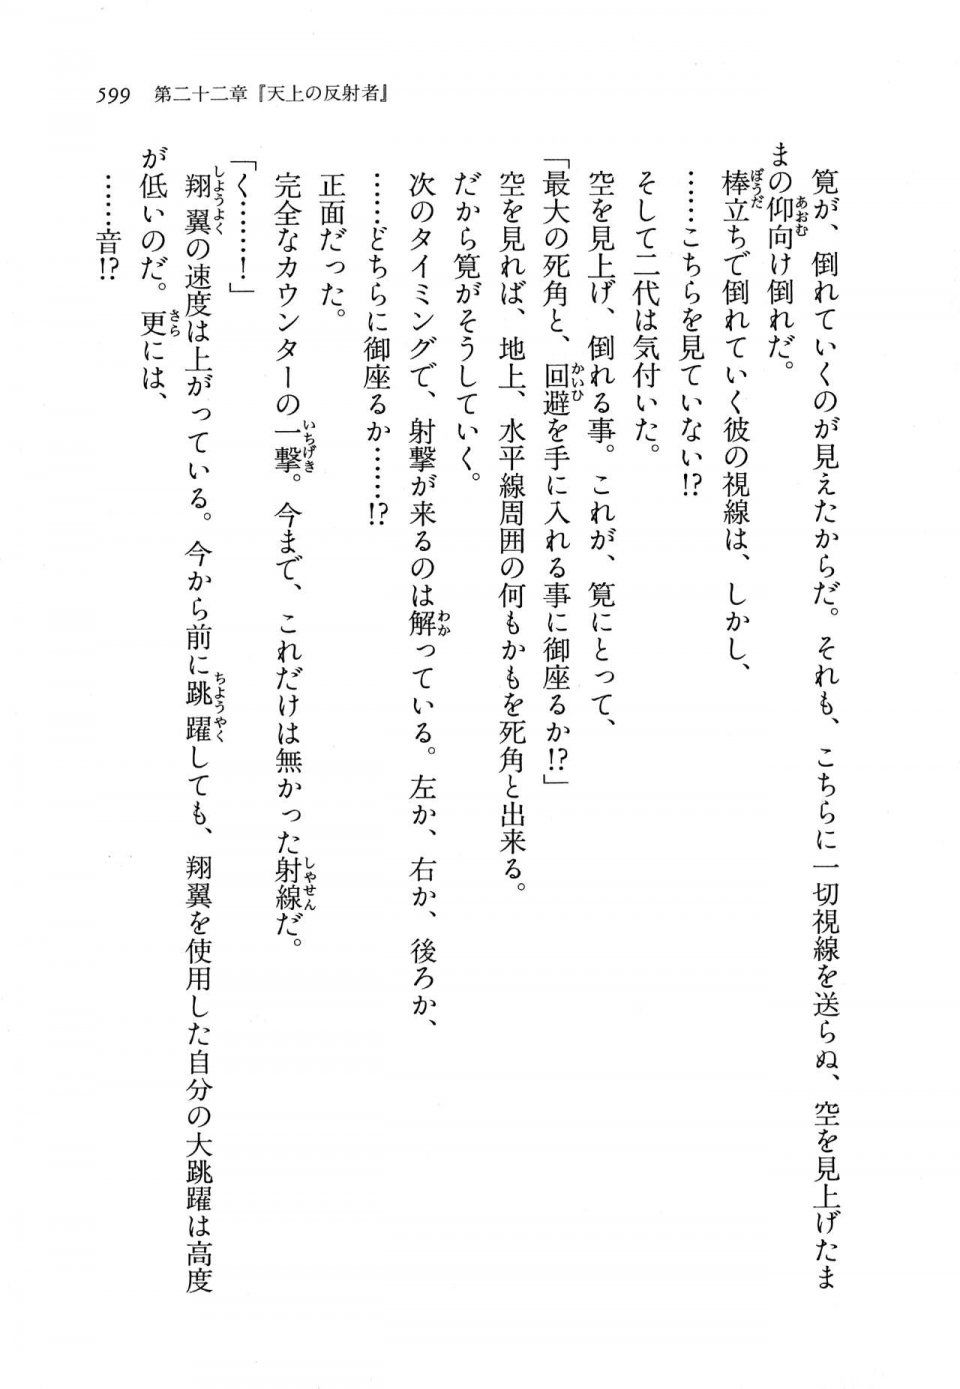 Kyoukai Senjou no Horizon LN Vol 11(5A) - Photo #599